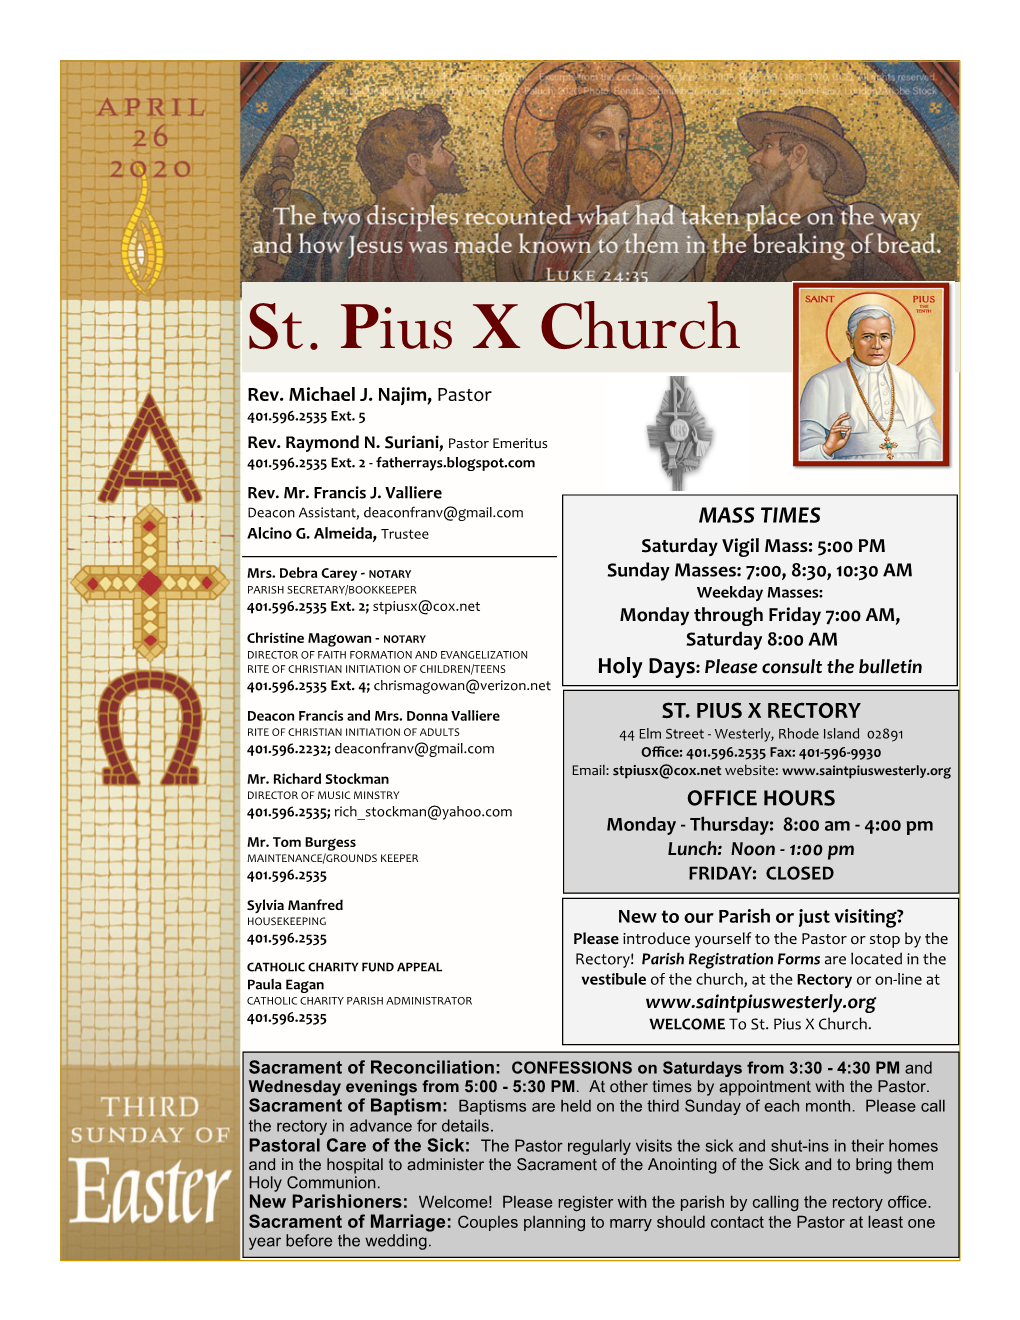 St. Pius X Church Rev